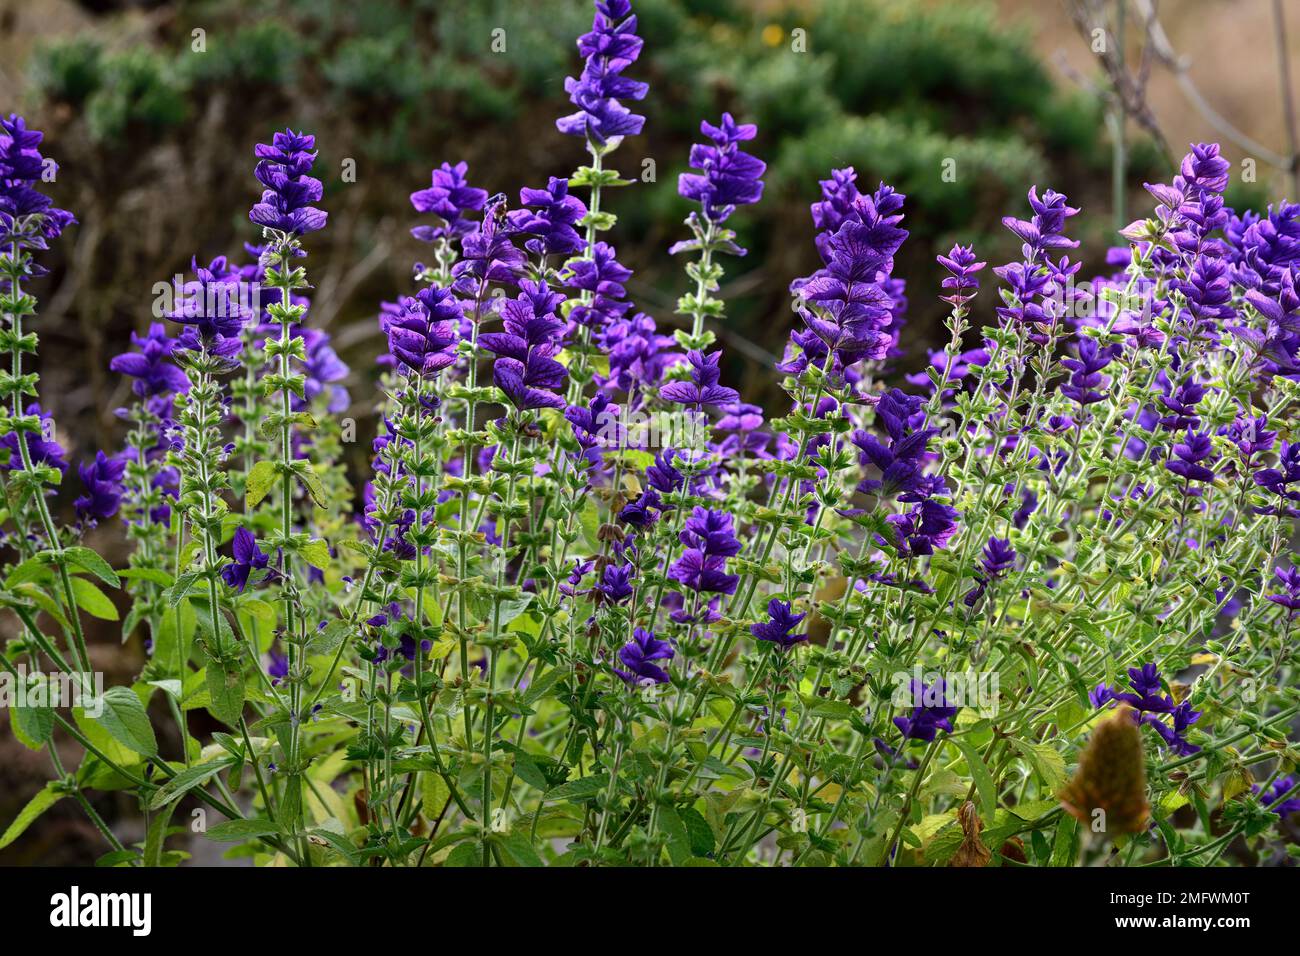 Salvia viridis Bleu,sauge myrelle annuelle,grandes bractées violet-bleu,grandes fleurs violet-bleu,floraison,annuals,salvias annuelles,RM Floral Banque D'Images